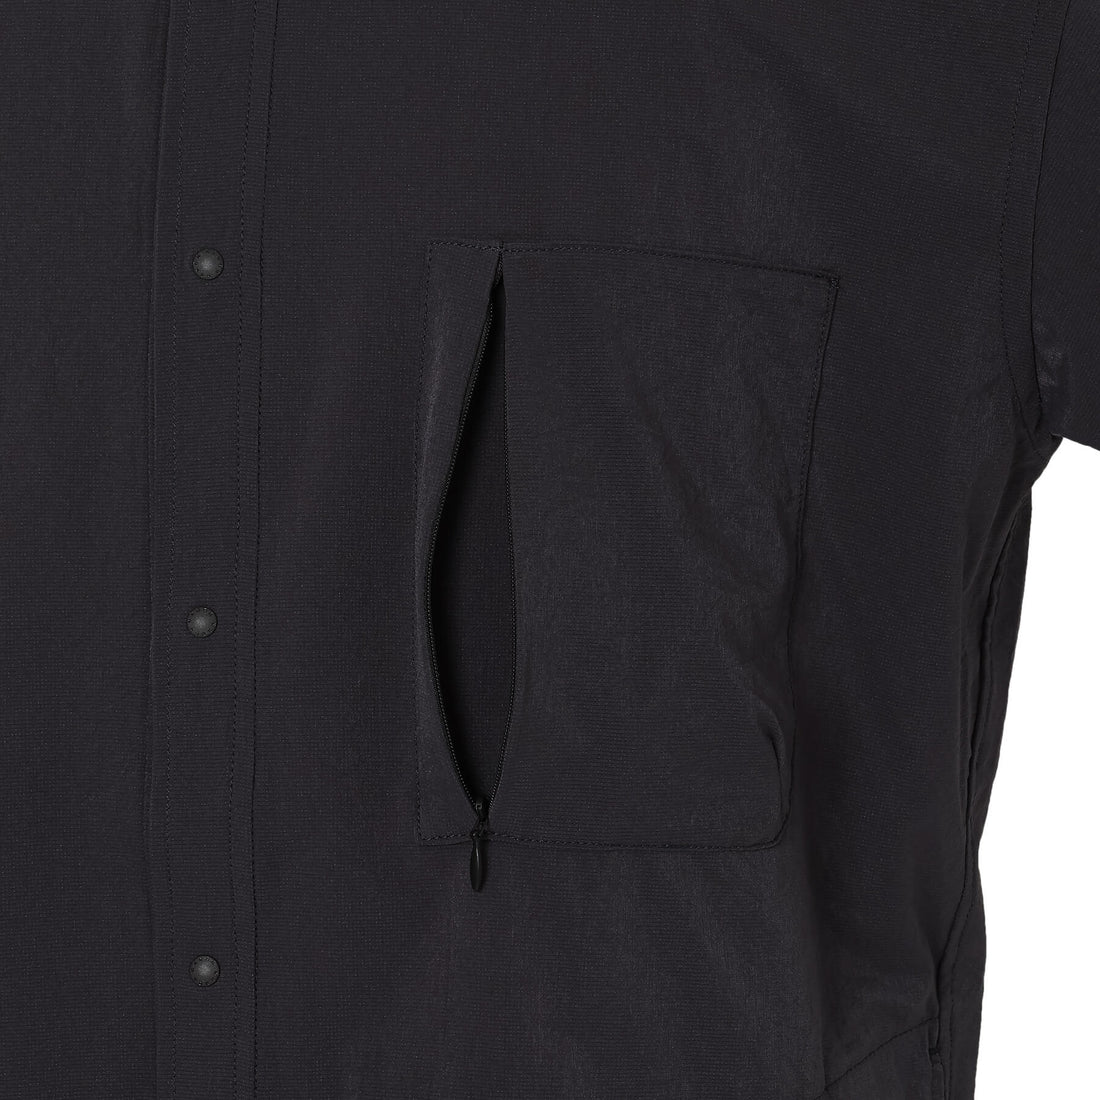 AIR CLOTH COMFY L/S SHIRT / エアクロスコンフィロングスリーブシャツ